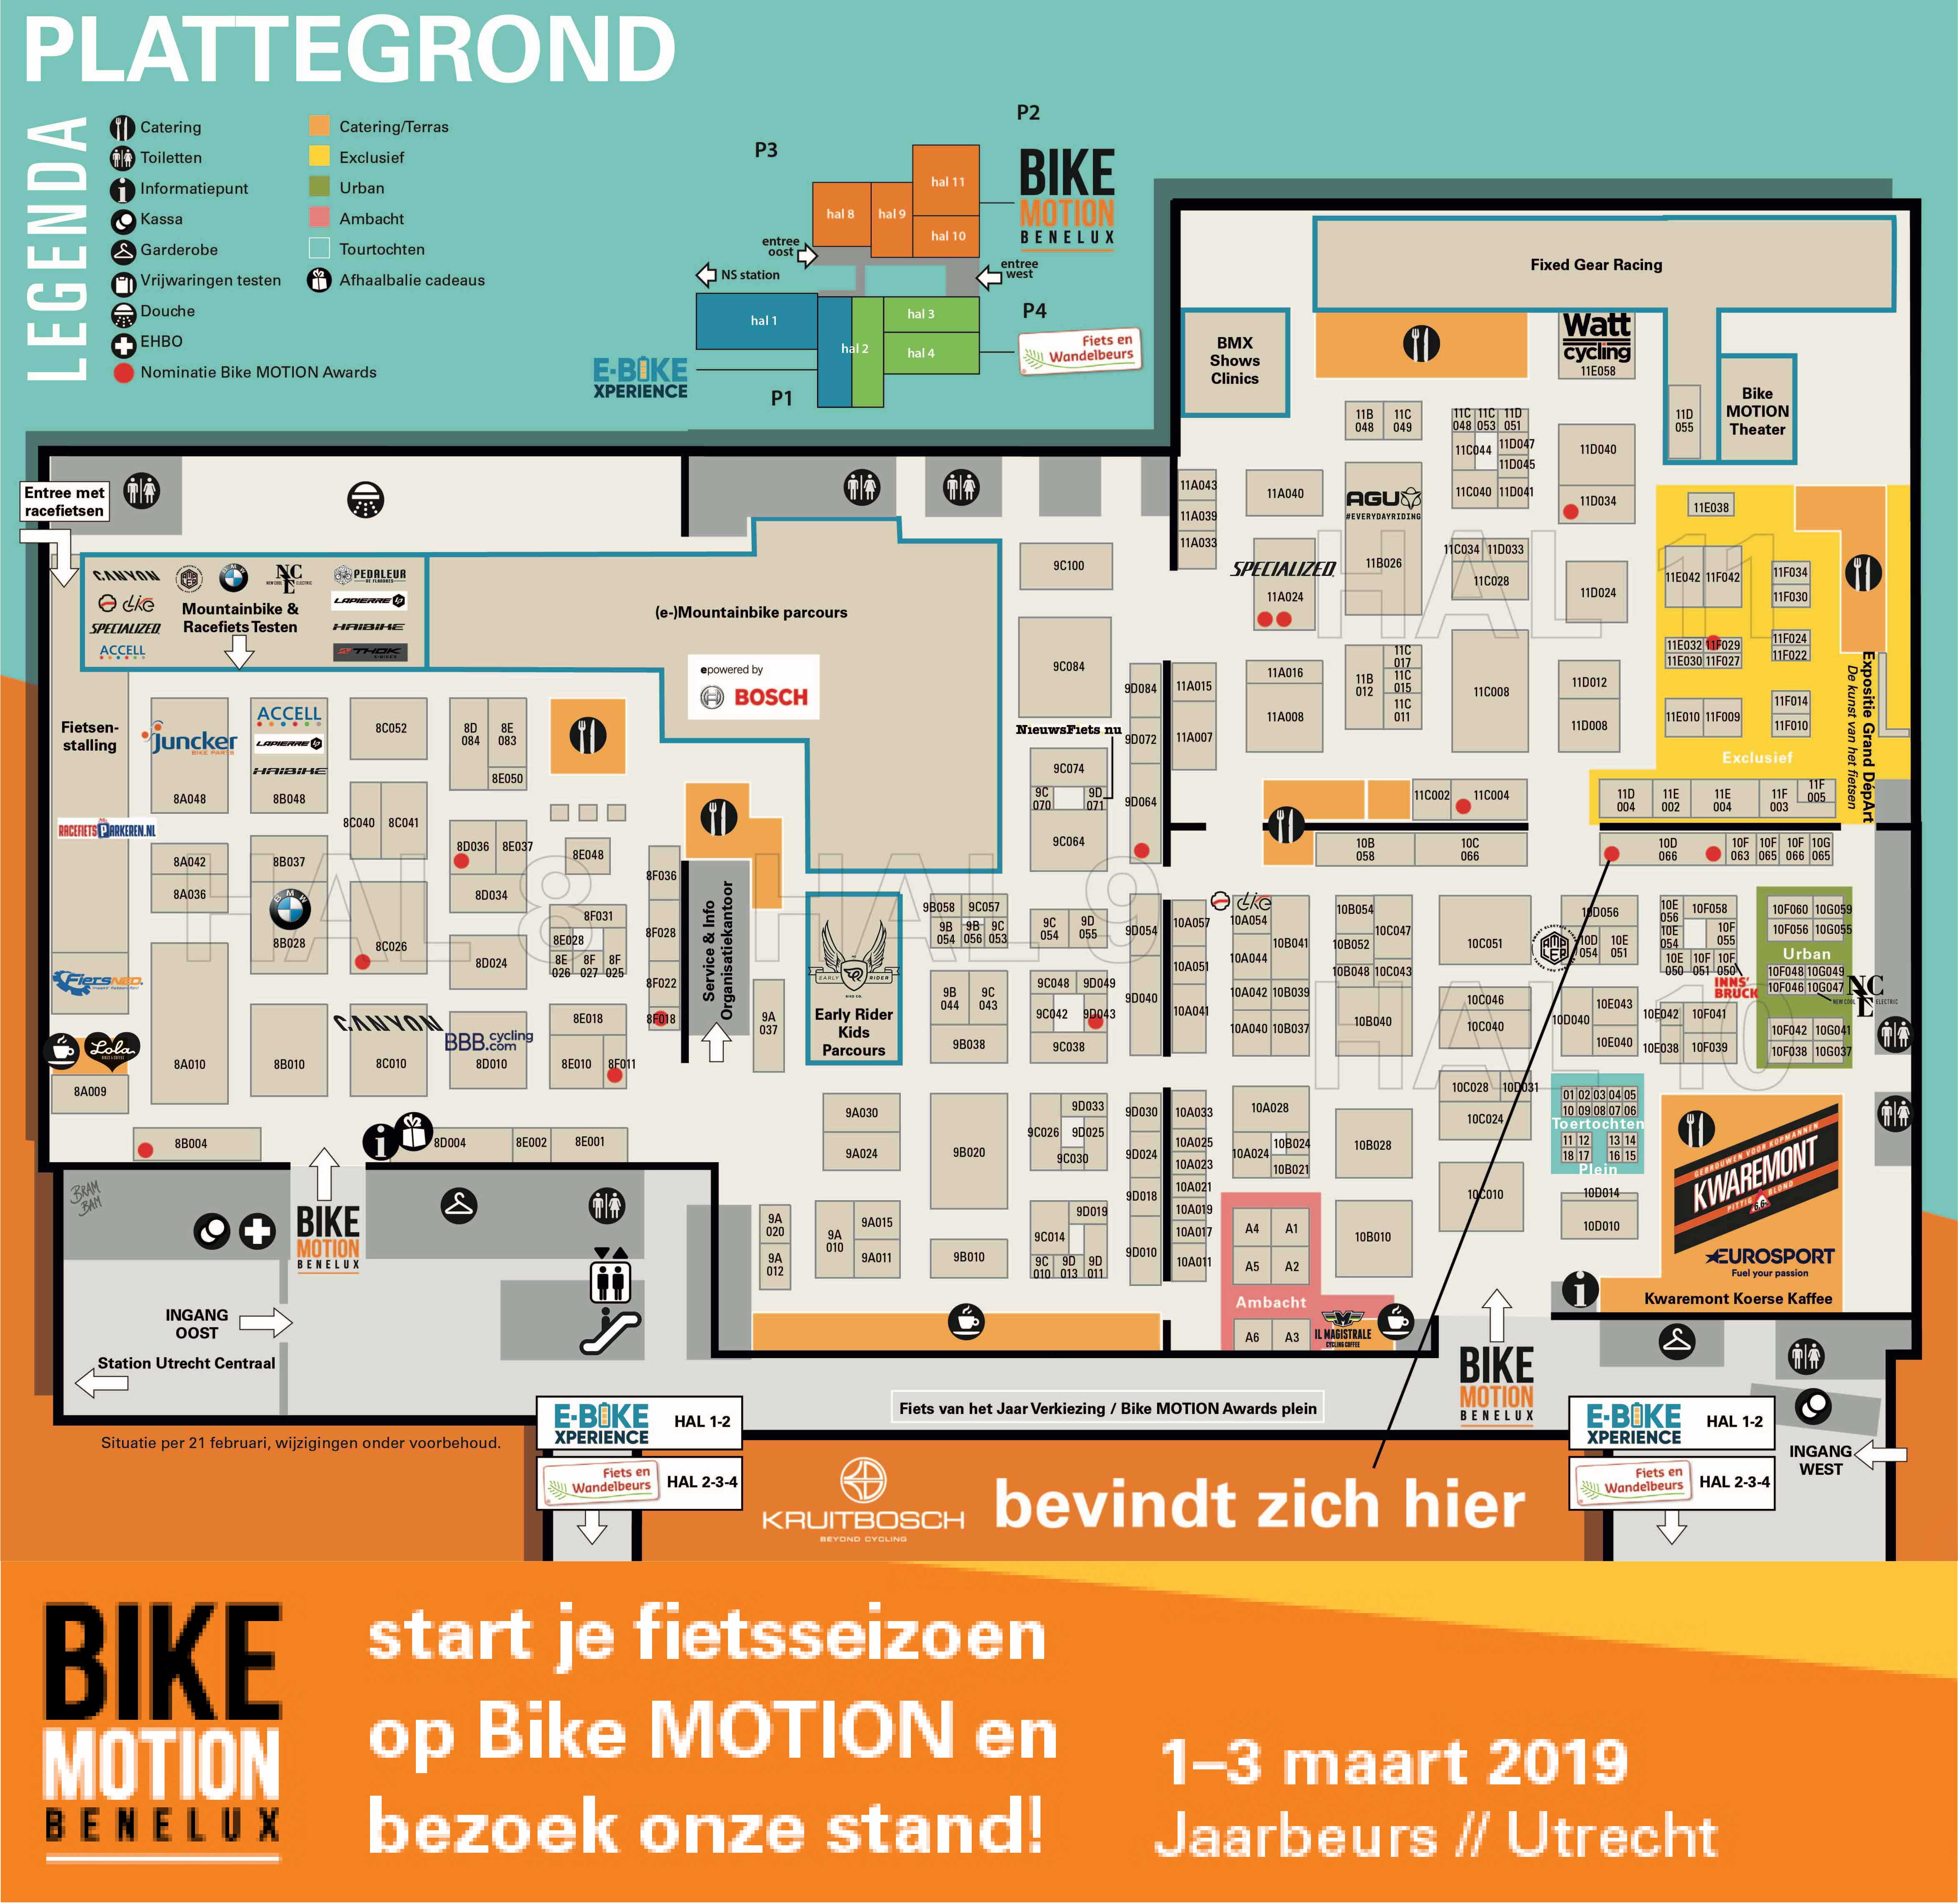 Kruitbosch op Bike Motion 2019